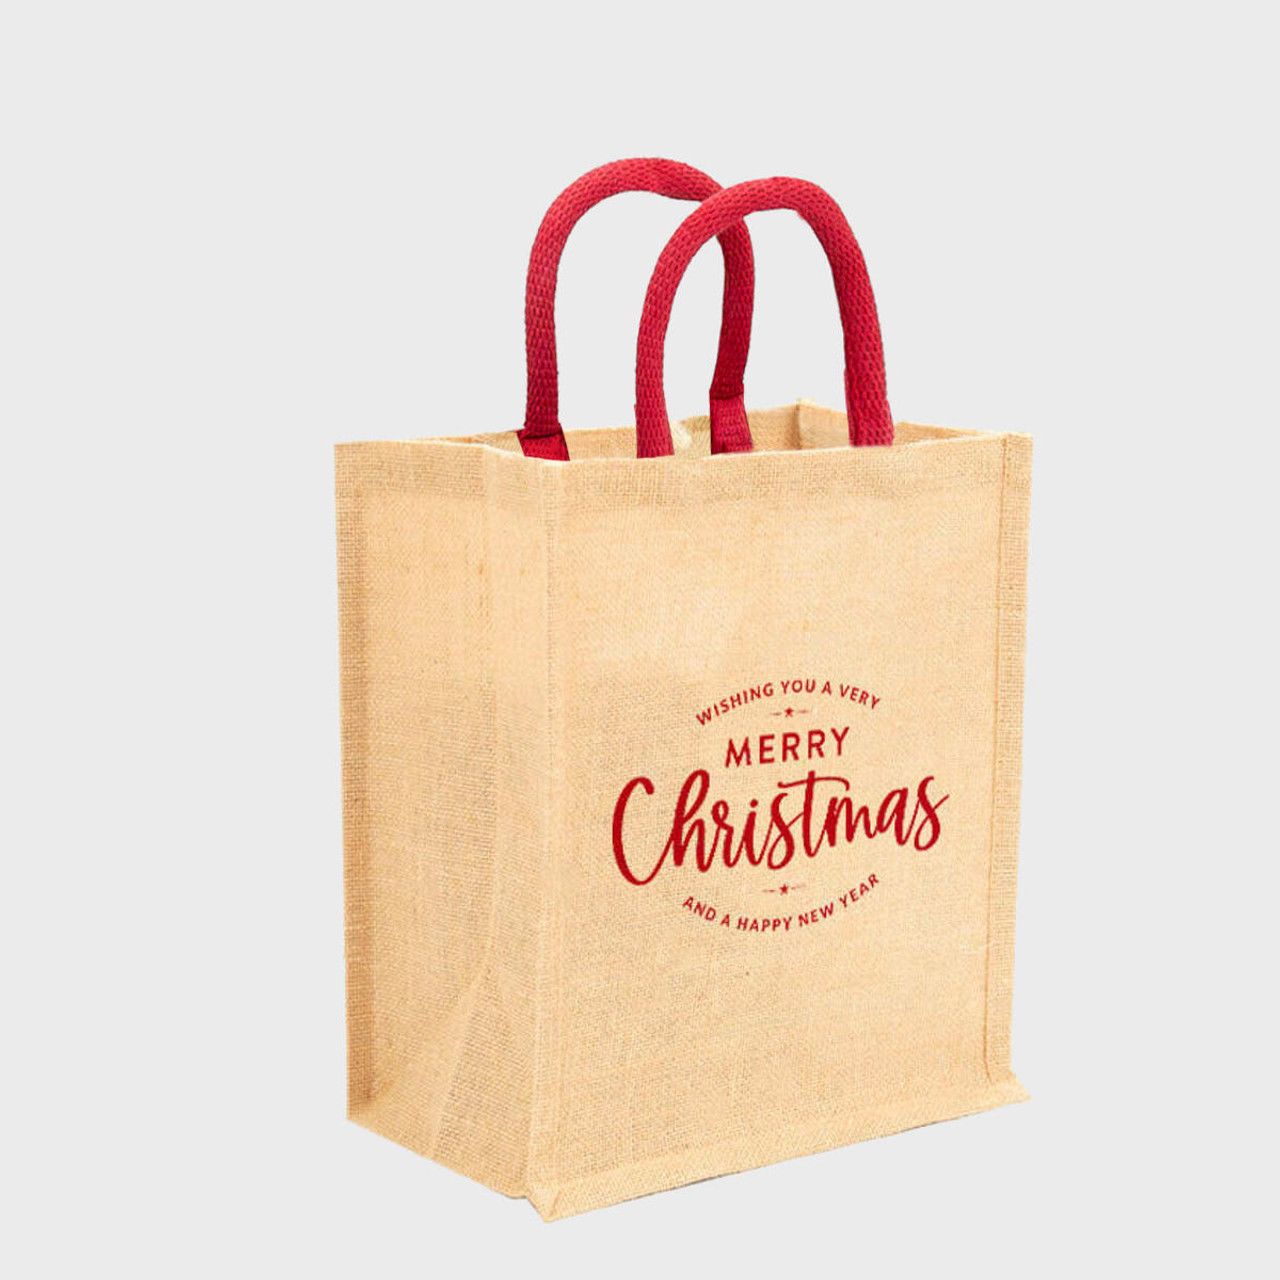 6 Wine Bottle Merry Christmas Jute Bag Hamper Boxes